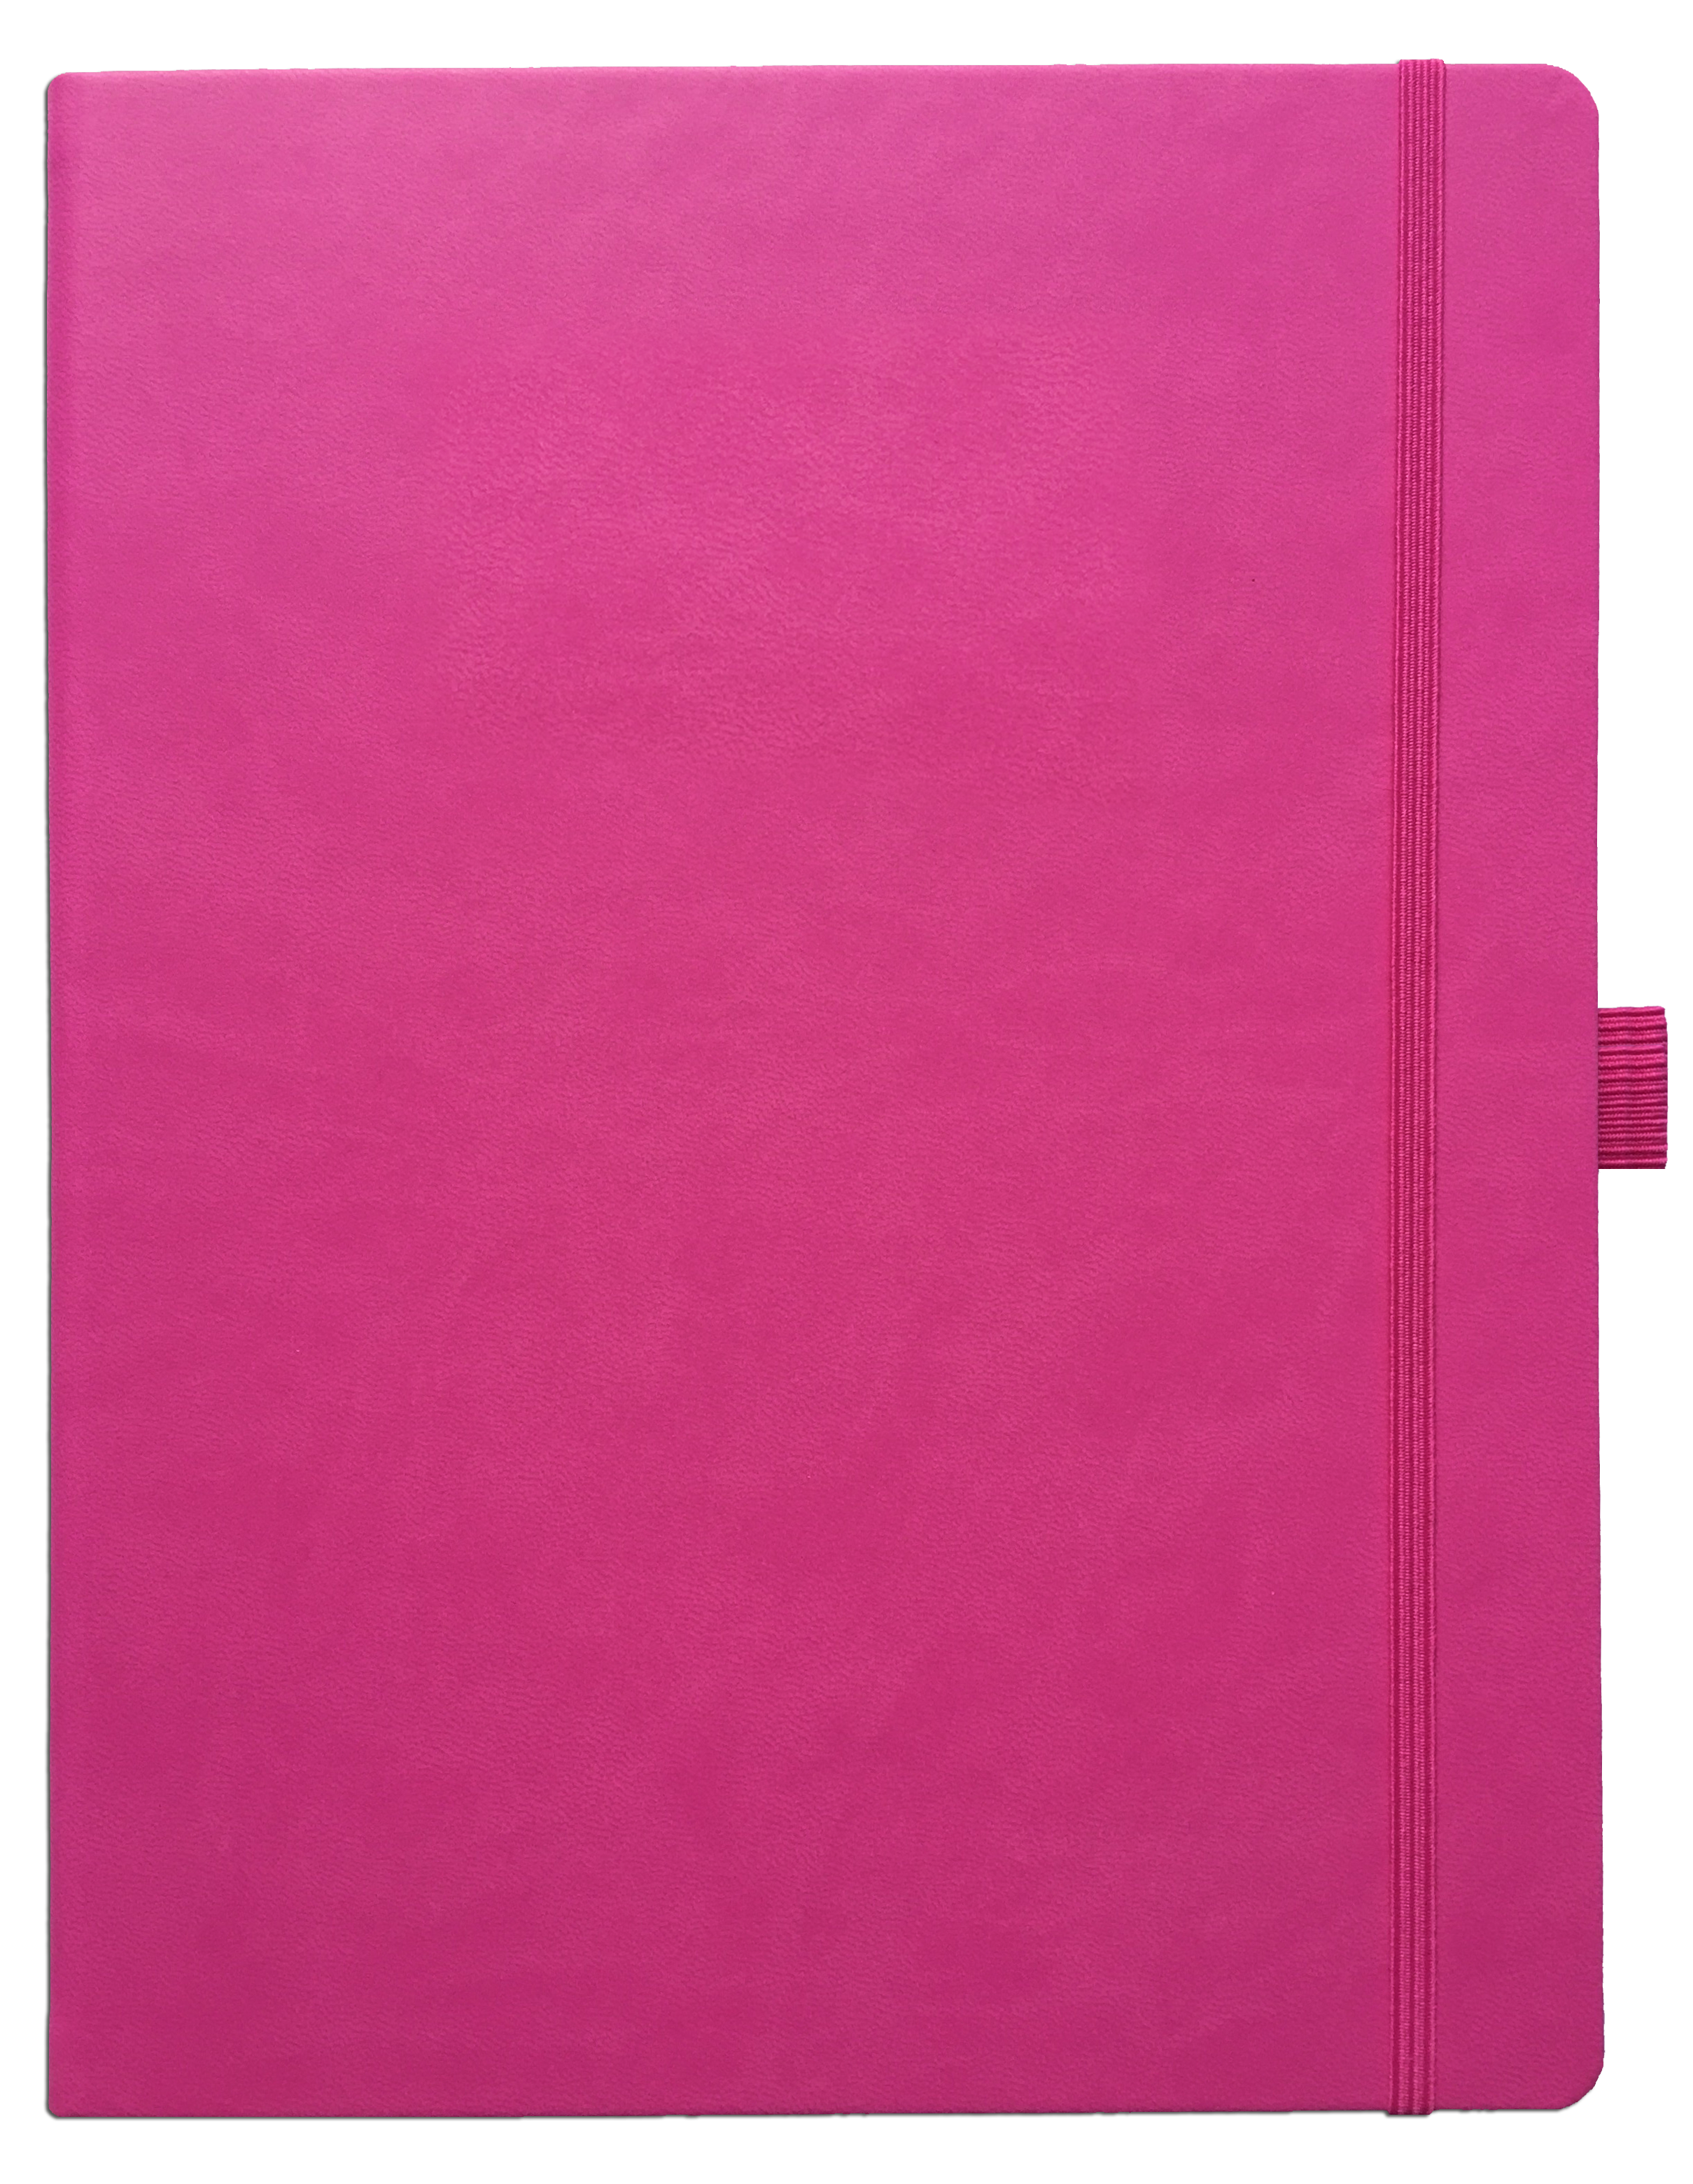 Notizbuch 17 x 25 cm , kariert, 240 S., pink 